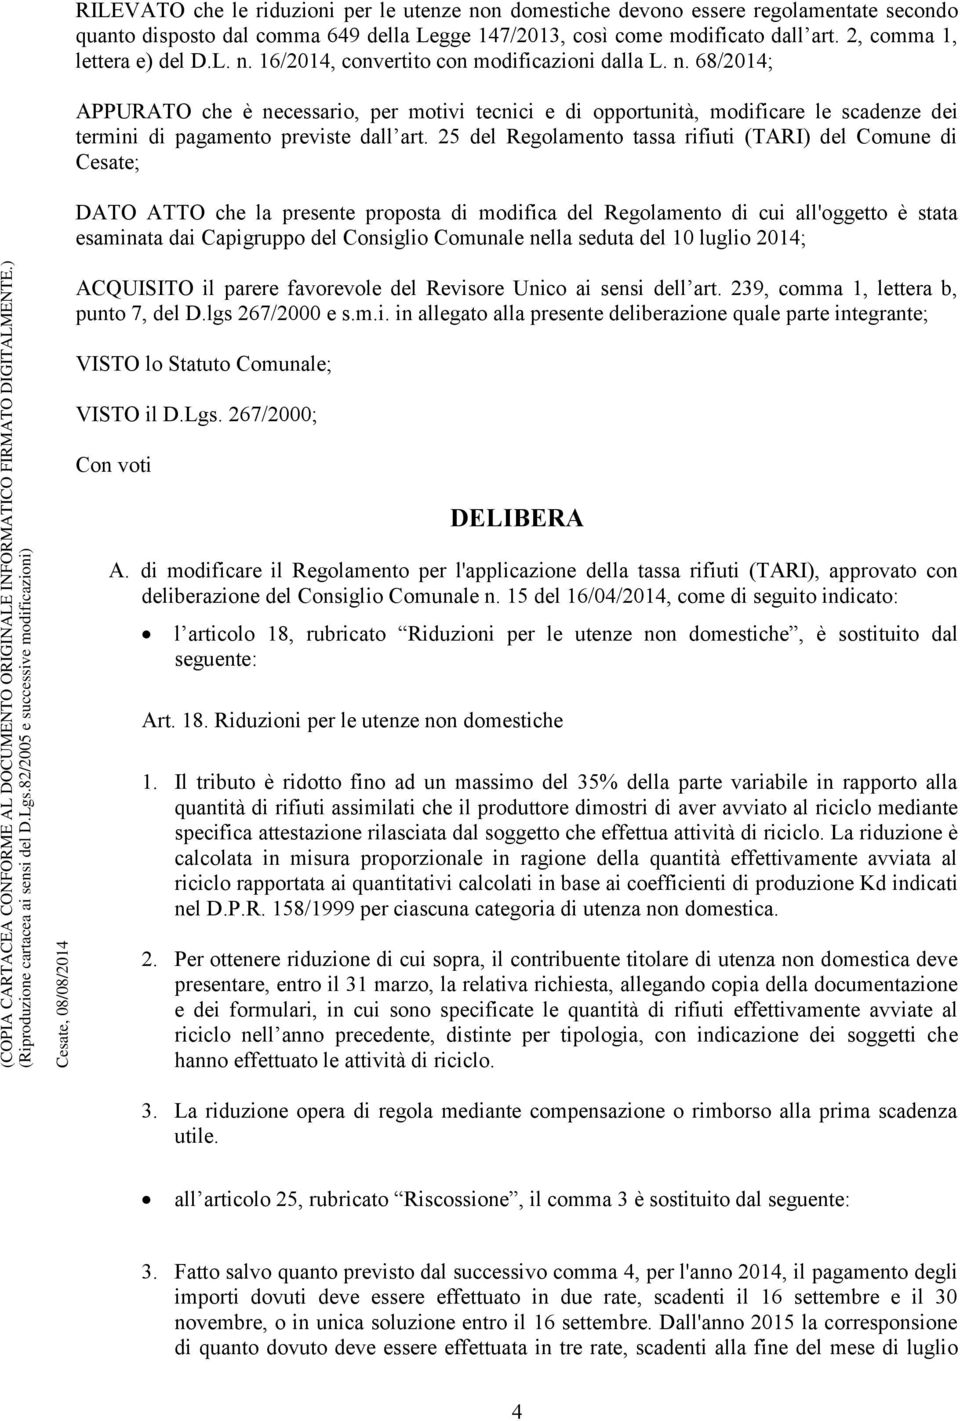 25 del Regolamento tassa rifiuti (TARI) del Comune di Cesate; DATO ATTO che la presente proposta di modifica del Regolamento di cui all'oggetto è stata esaminata dai Capigruppo del Consiglio Comunale